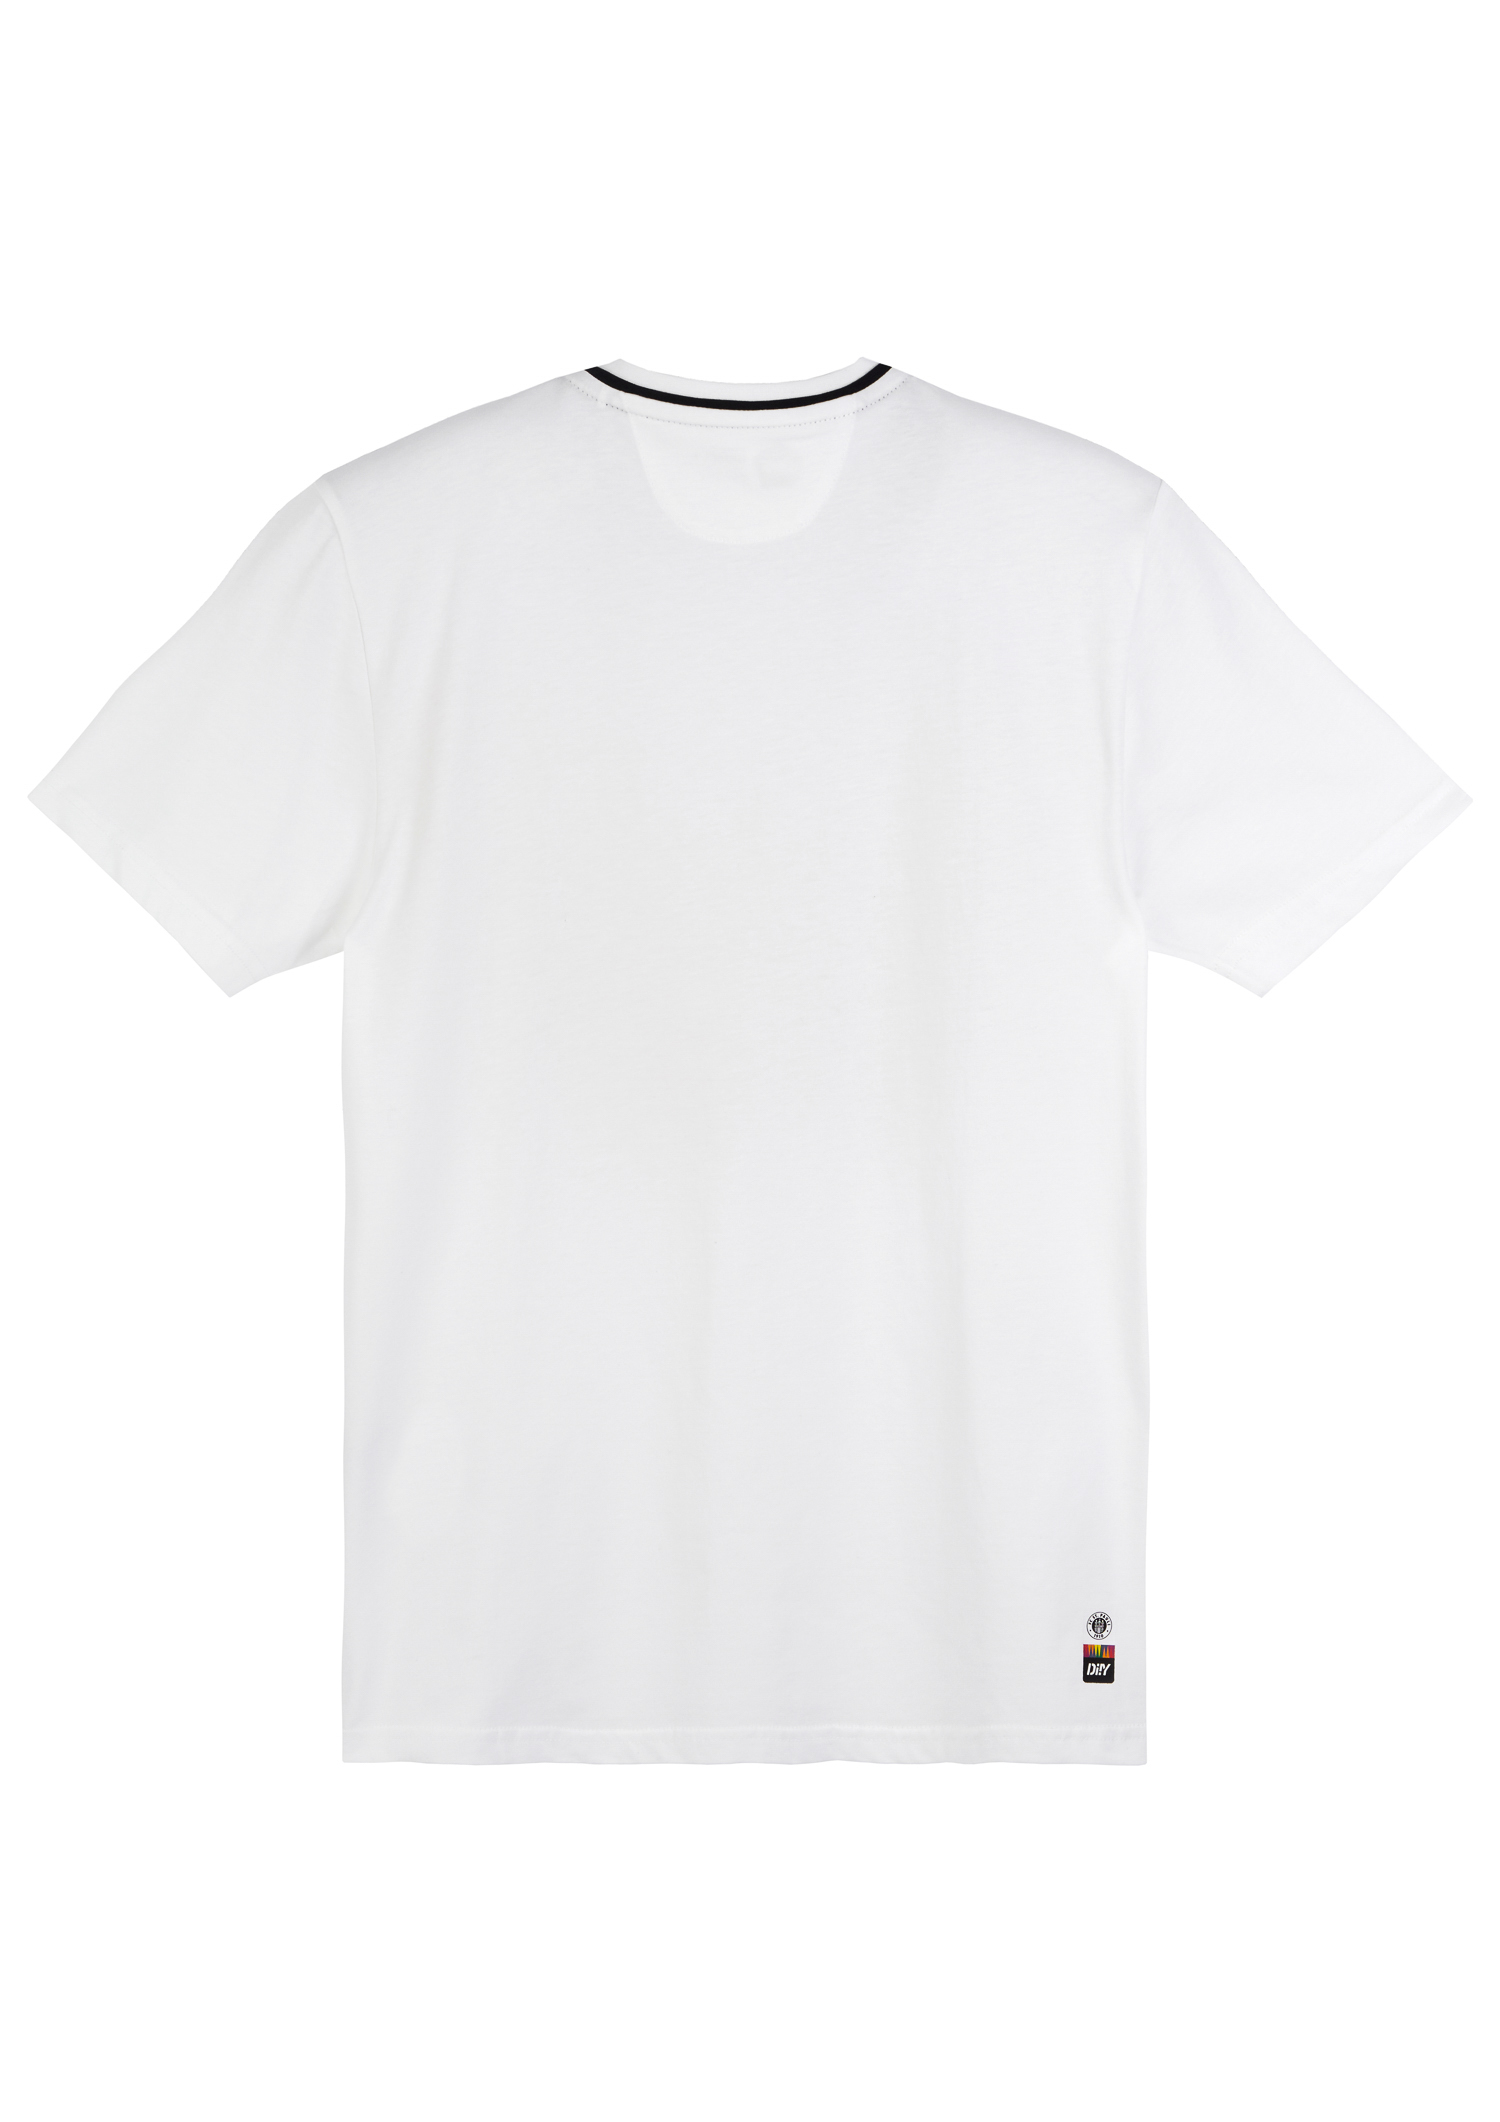 DIIY - T-Shirt 2023-24 Weiss